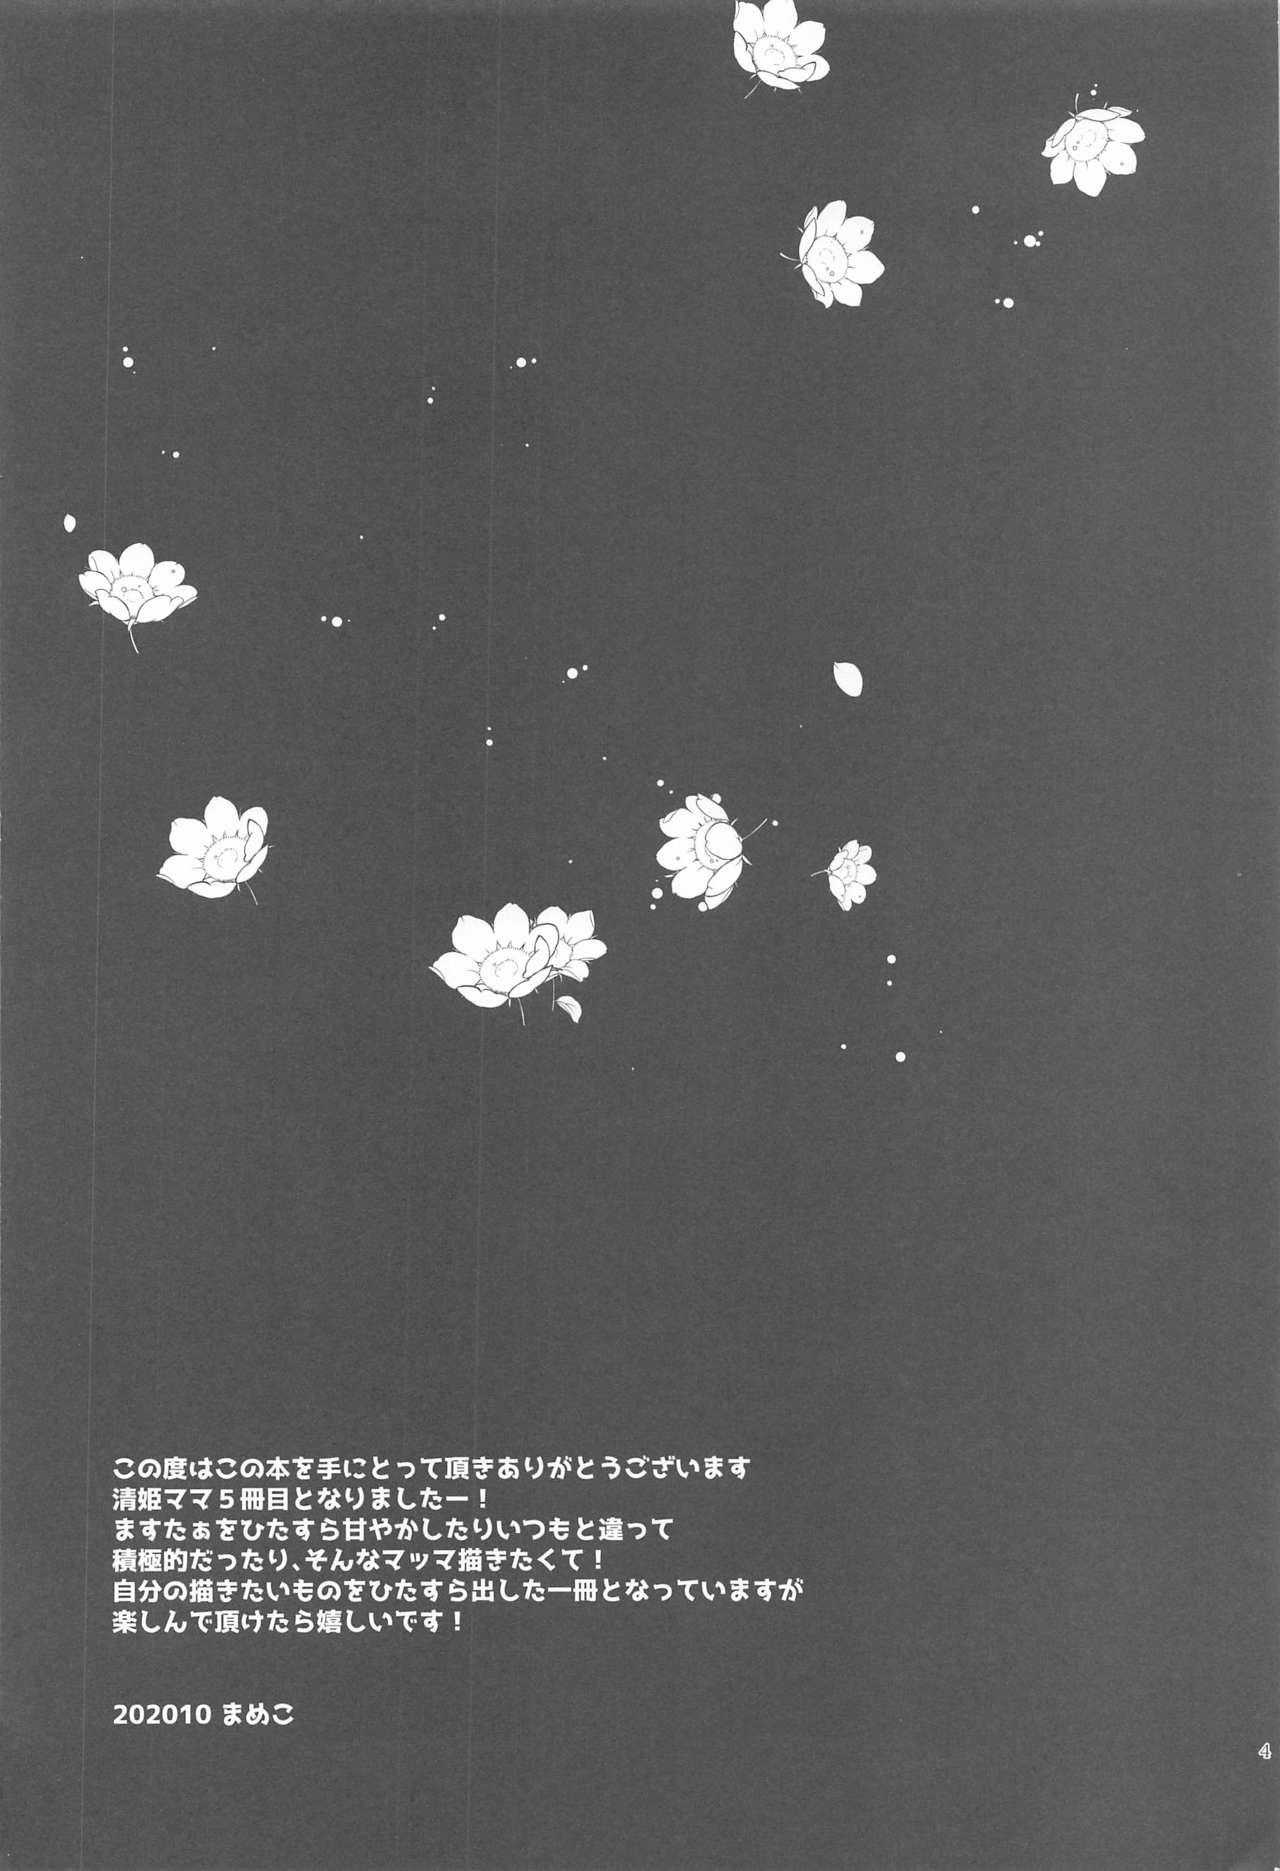 Cdzinha Uchi no Kiyohime wa Mama 5 - Fate grand order Cdmx - Page 3